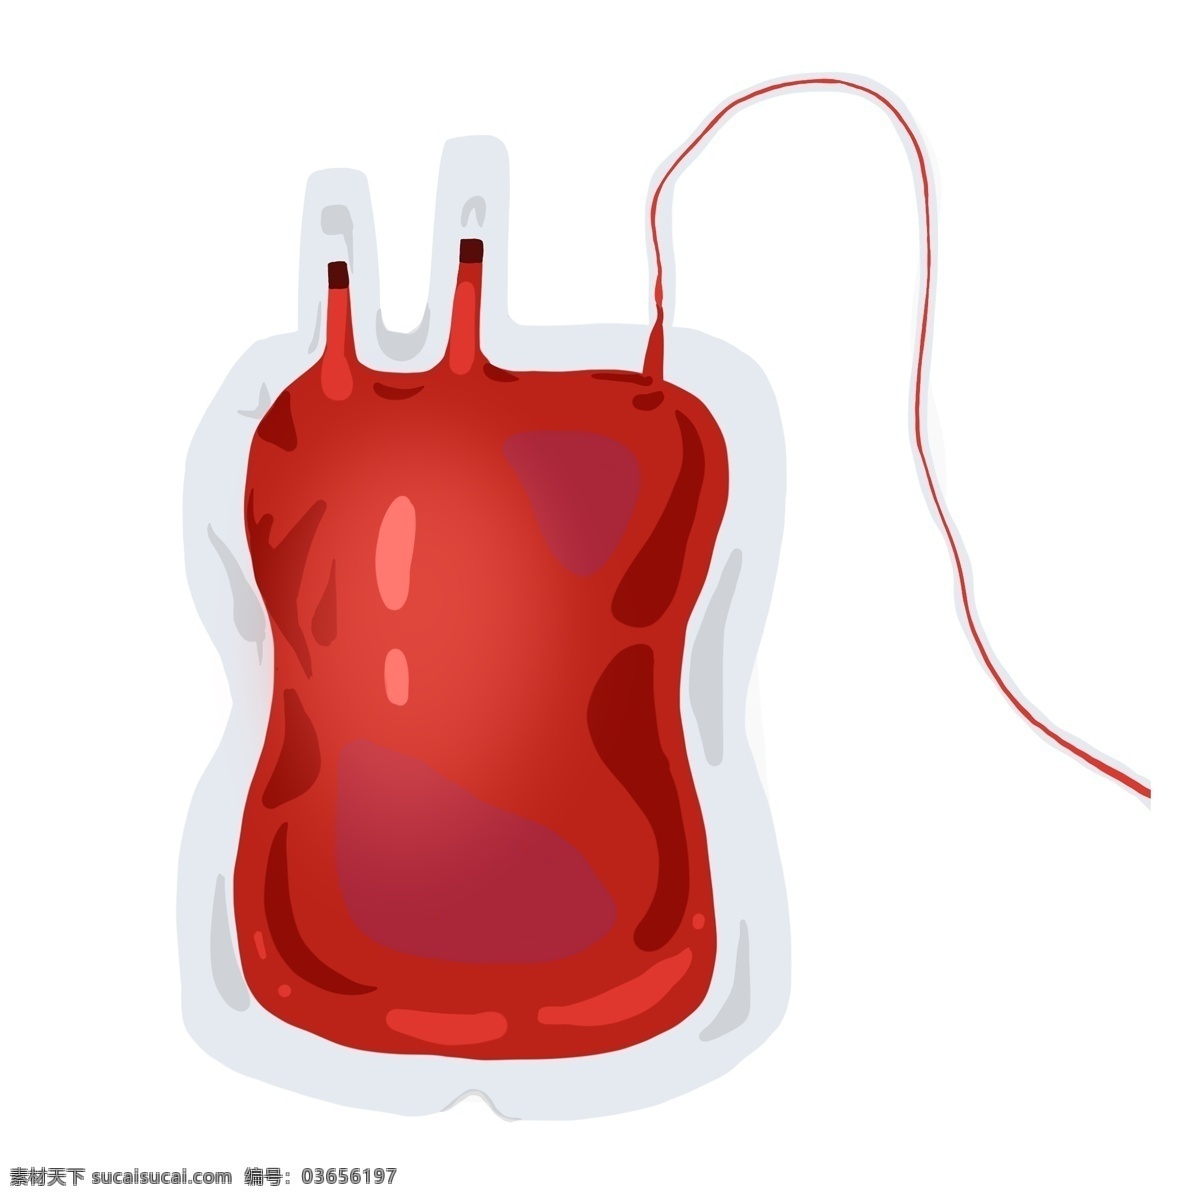 血液 袋 医疗 插画 一袋血 血型 血液袋 输血治疗 血液插图 一袋血插图 医疗血液袋